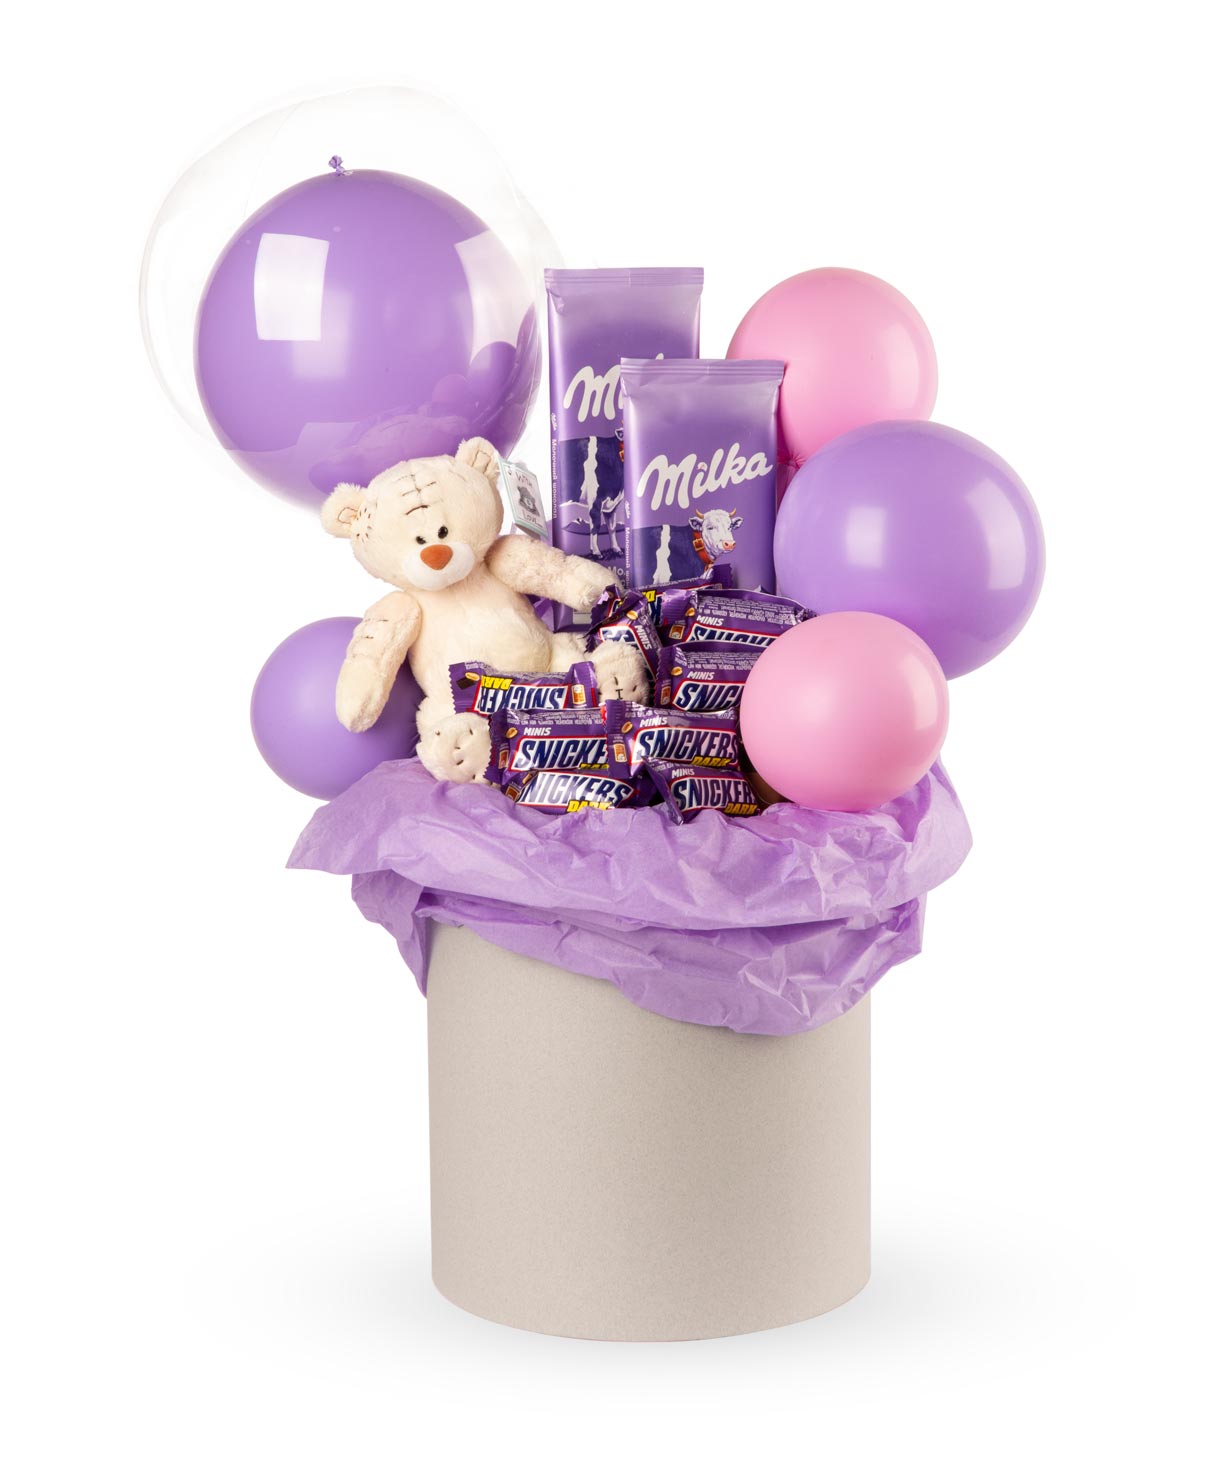 Композиция `Ирмино` с мягким мишкой, конфетами и воздушными шарами